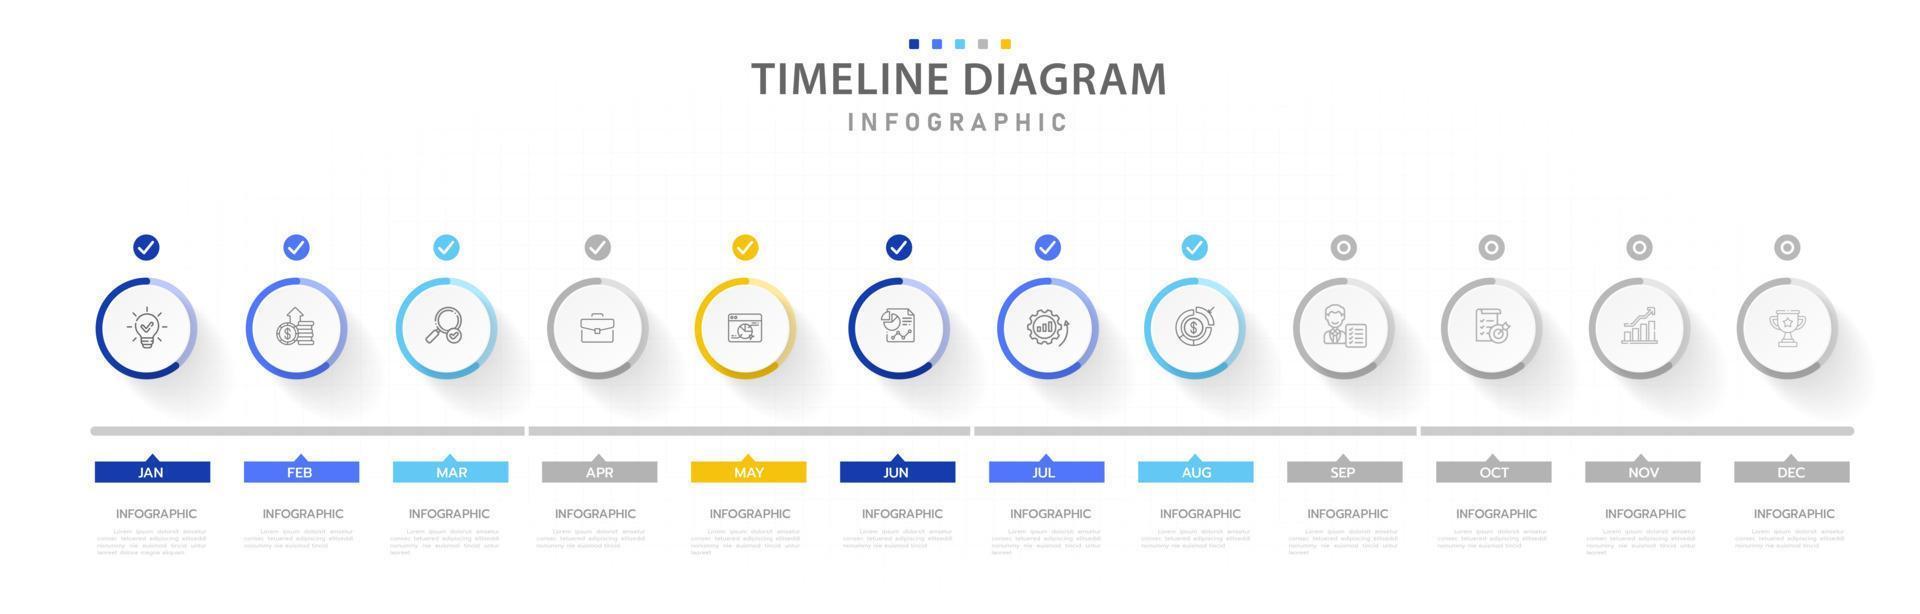 modello di infografica per le imprese. Calendario del diagramma temporale moderno di 12 mesi, infografica vettoriale di presentazione.